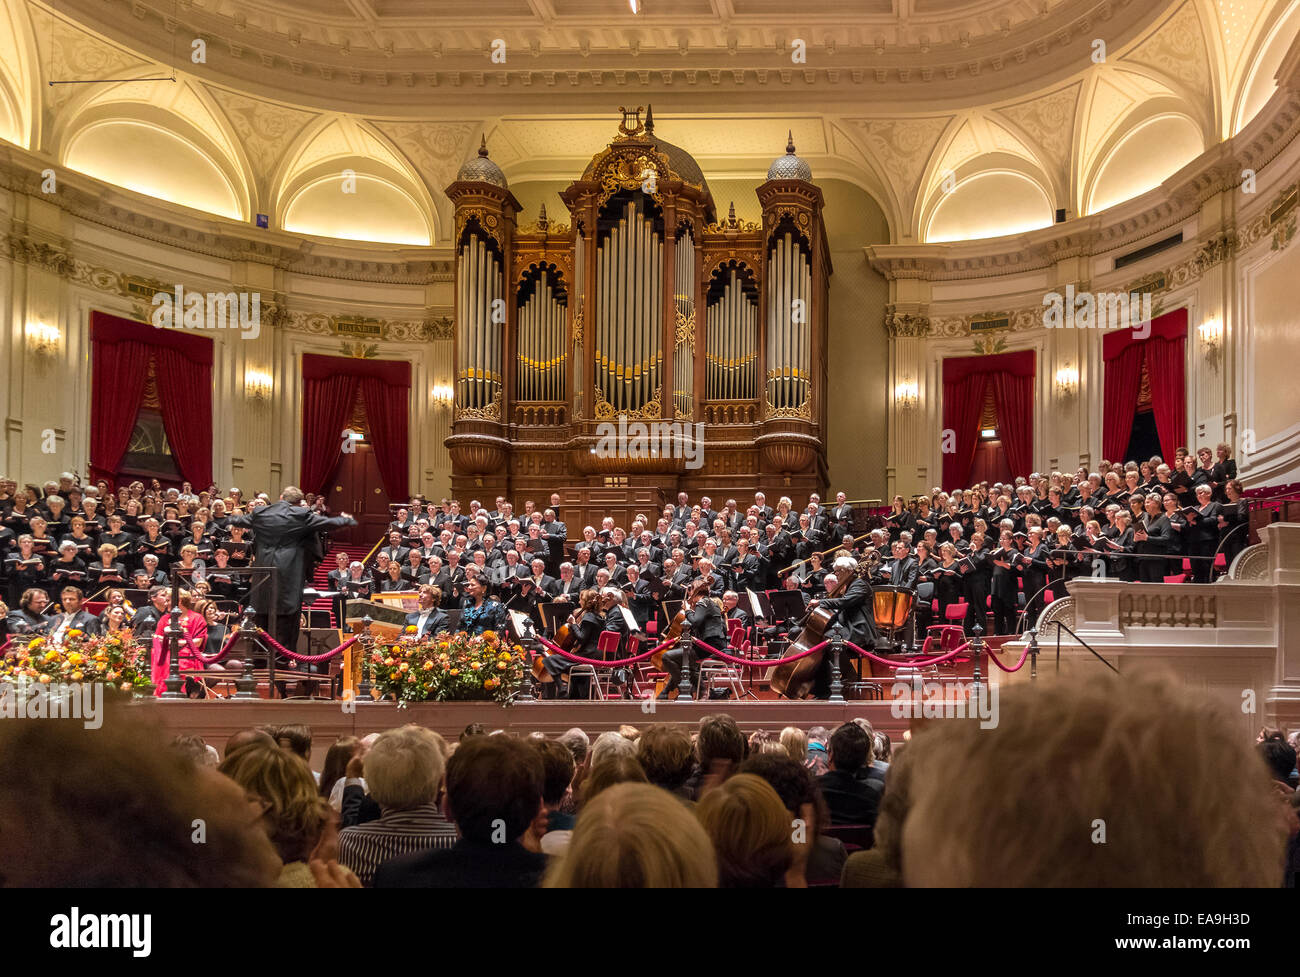 Royal Concertgebouw Amsterdam Interieur. Oratorienchor 250 singen den Messias. Sonntags-Matinee am Nachmittag konzertante Aufführung Stockfoto